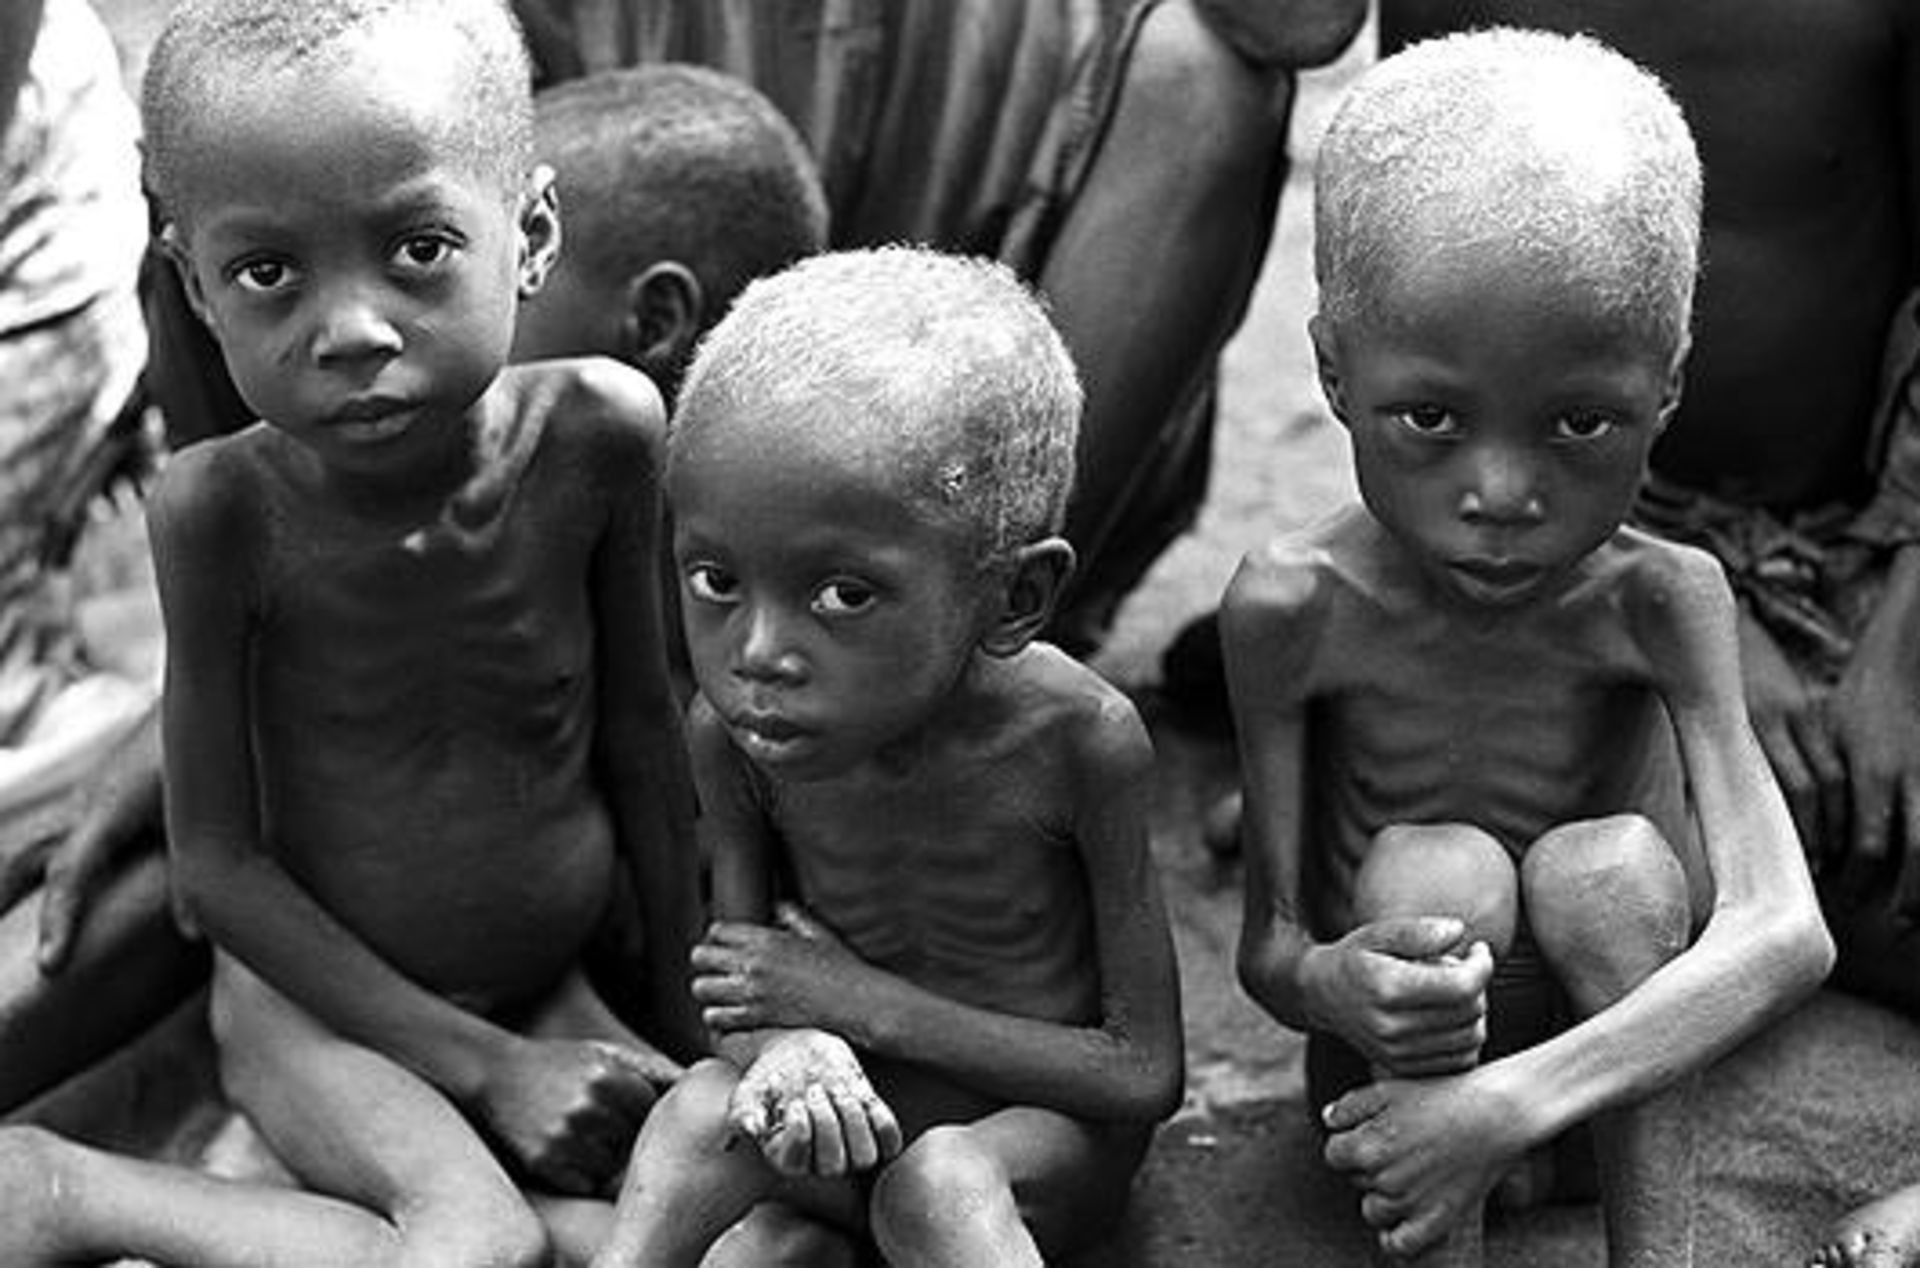 جنگ، فقر و گرسنگی